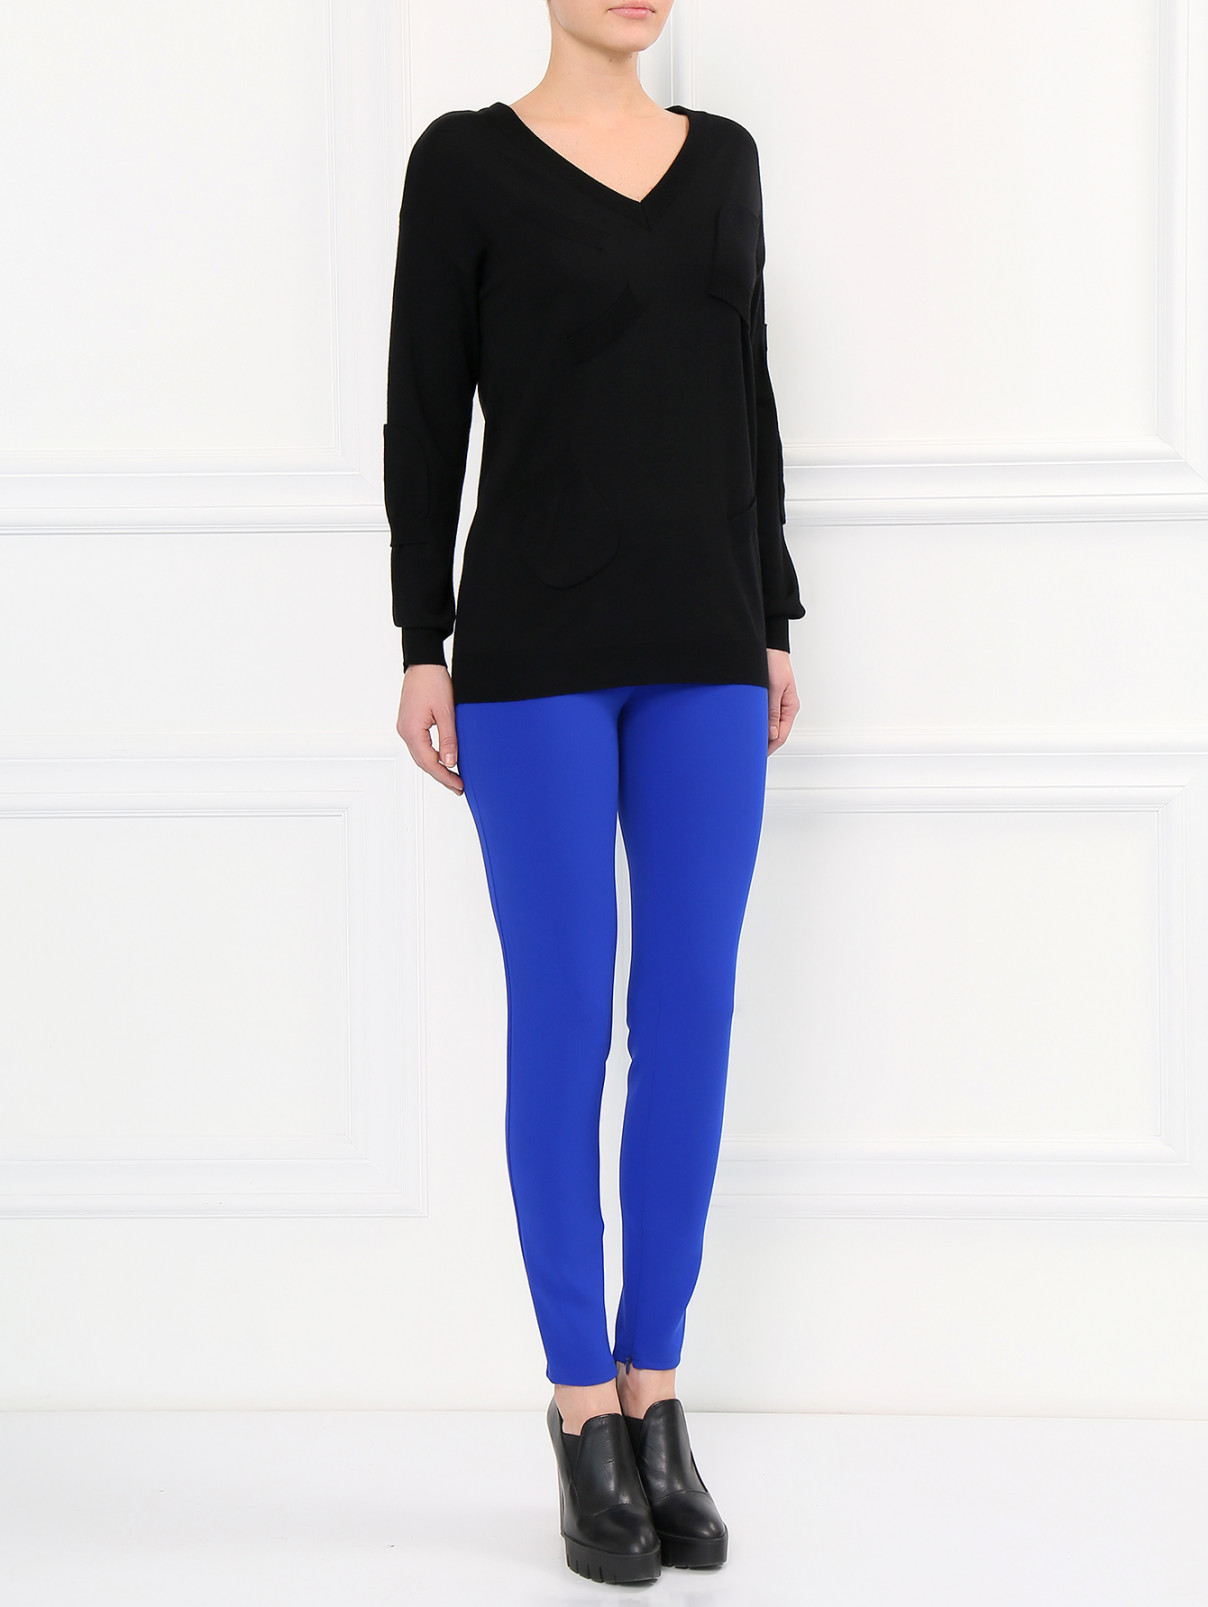 Узкие брюки с молниями во внутренних швах Moschino Boutique  –  Модель Общий вид  – Цвет:  Синий